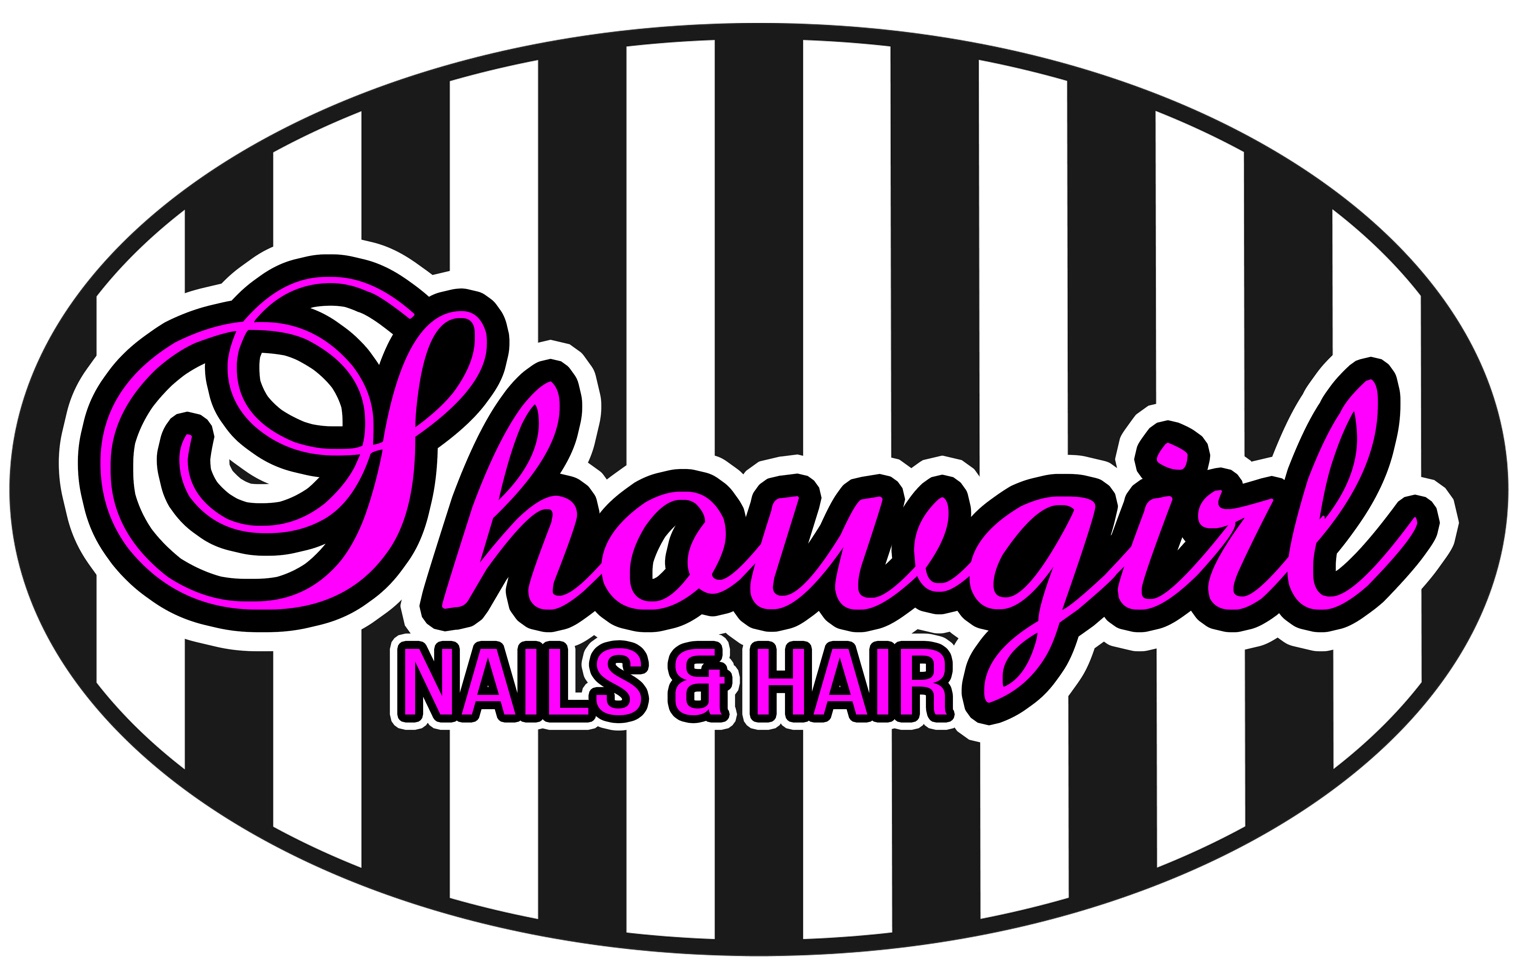 Showgirl Nails - Boise, Idaho